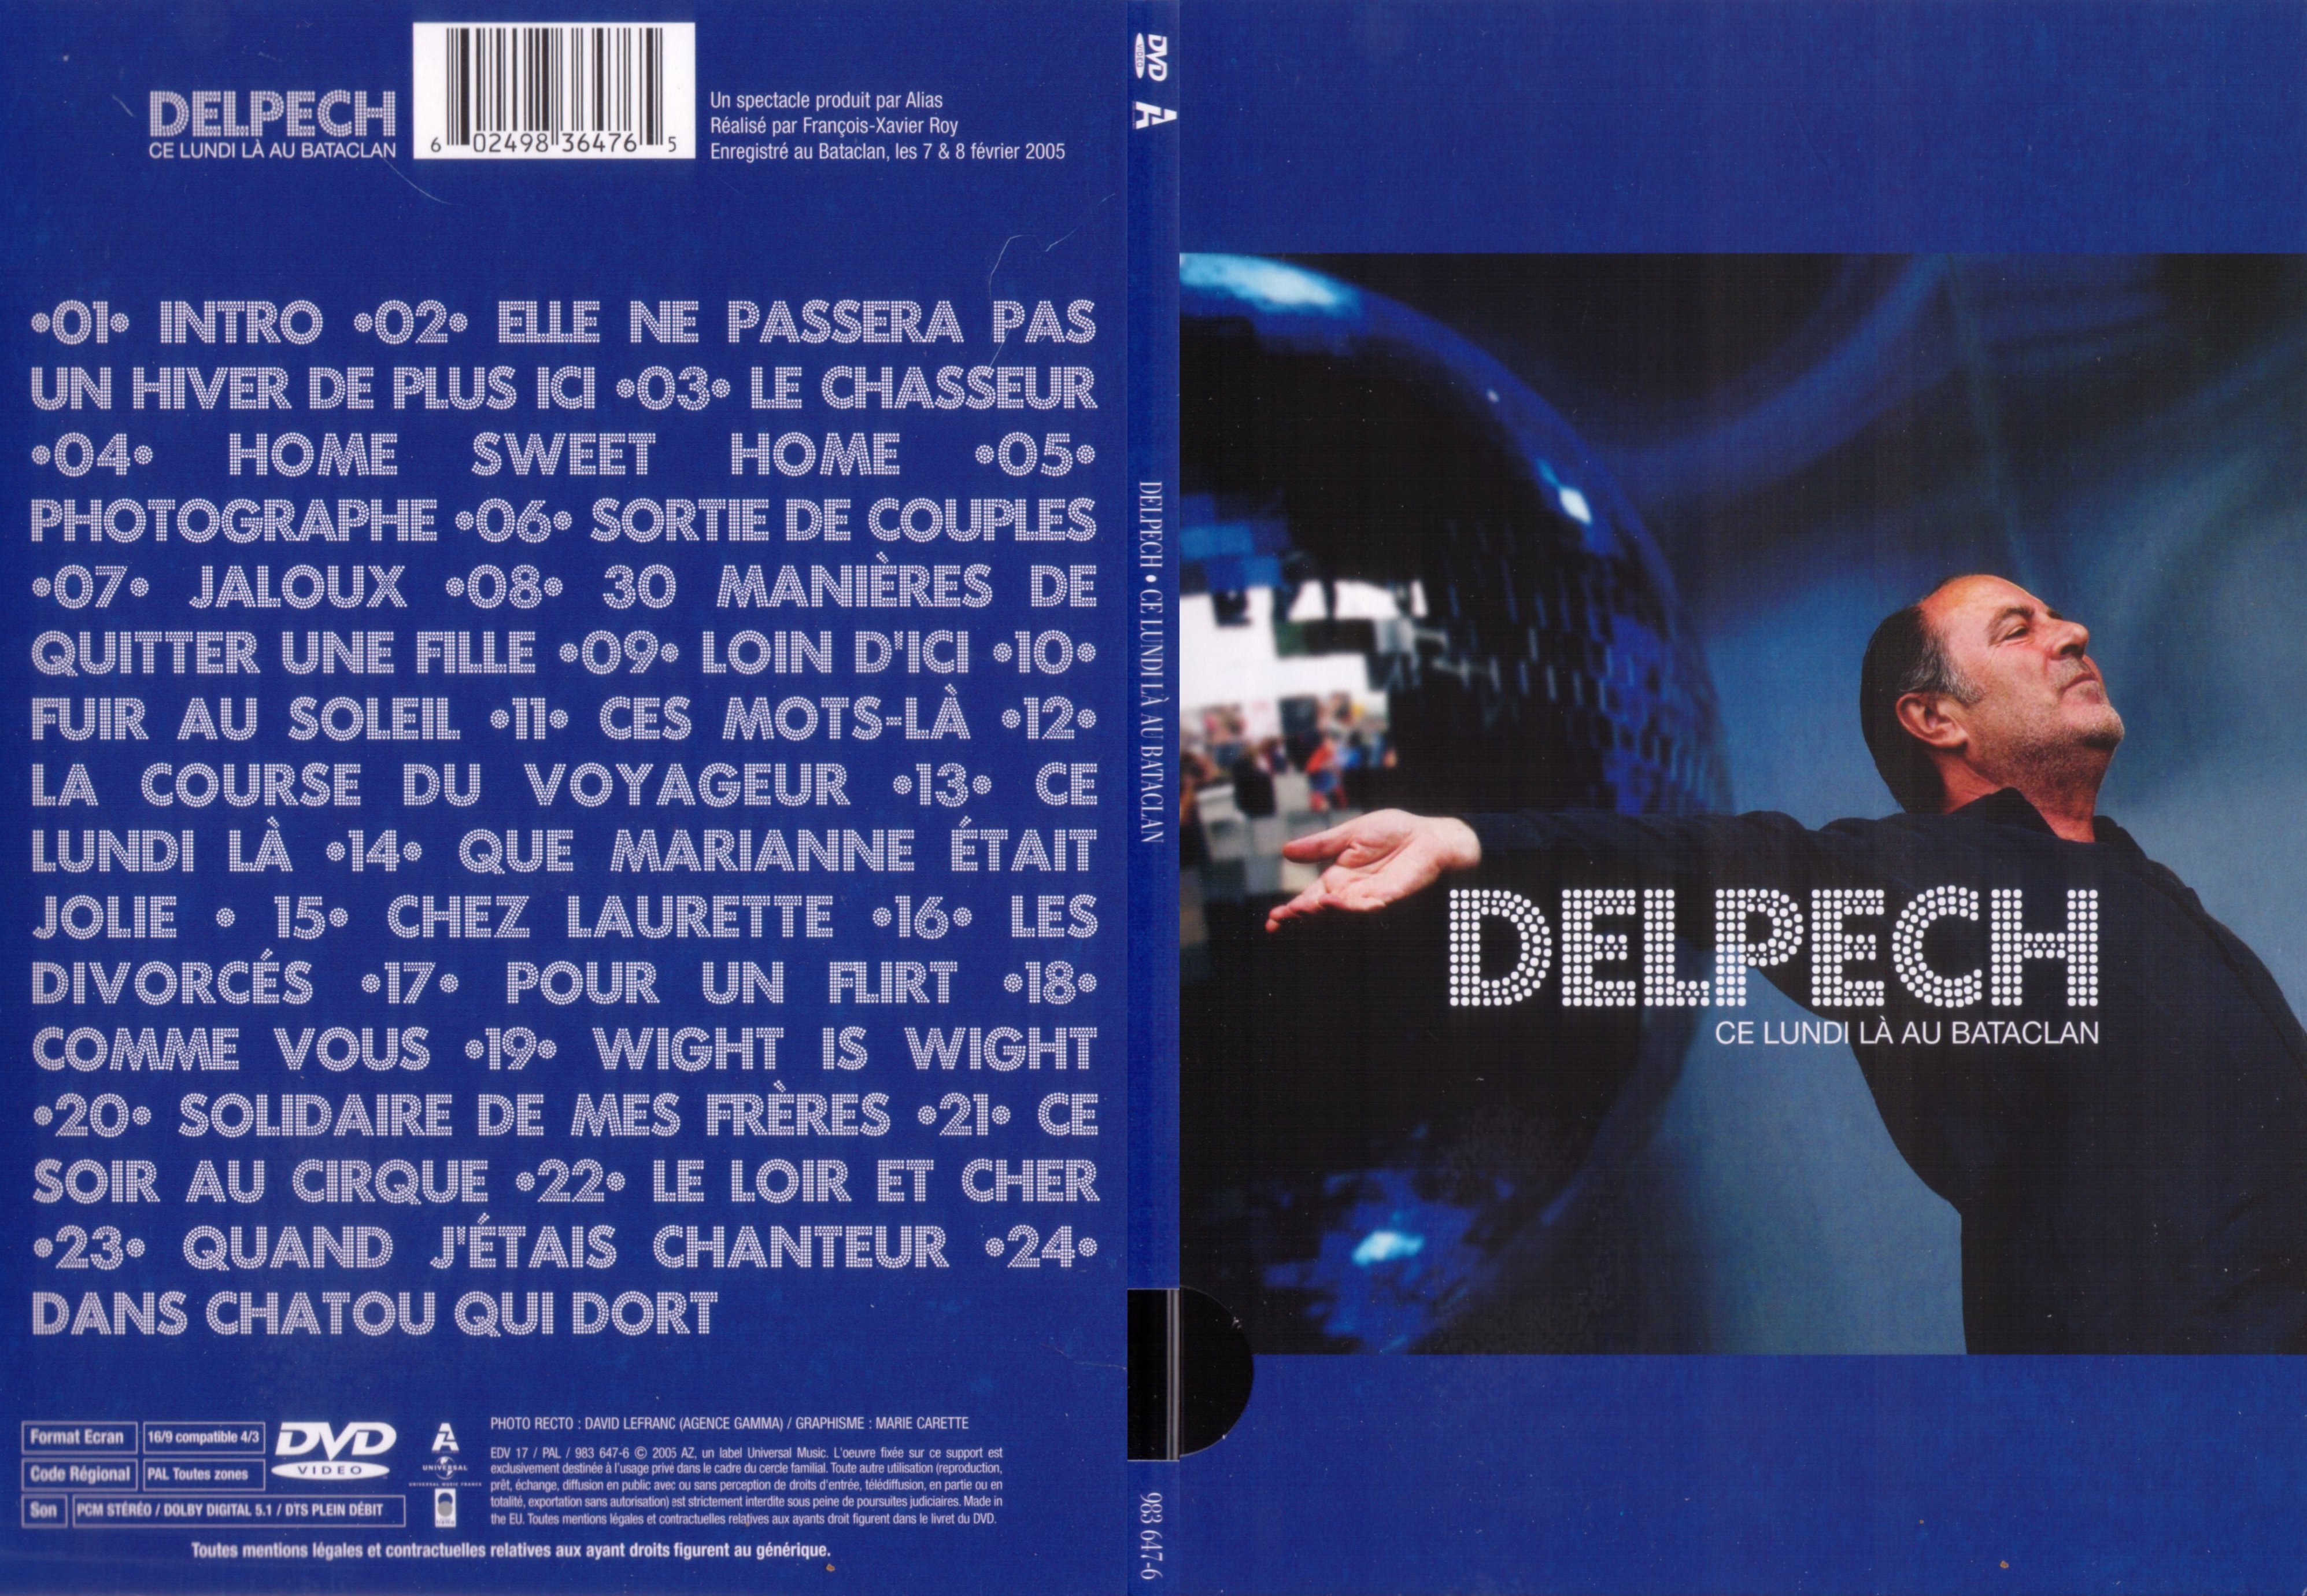 Jaquette DVD Delpech - Ce lundi la au bataclan